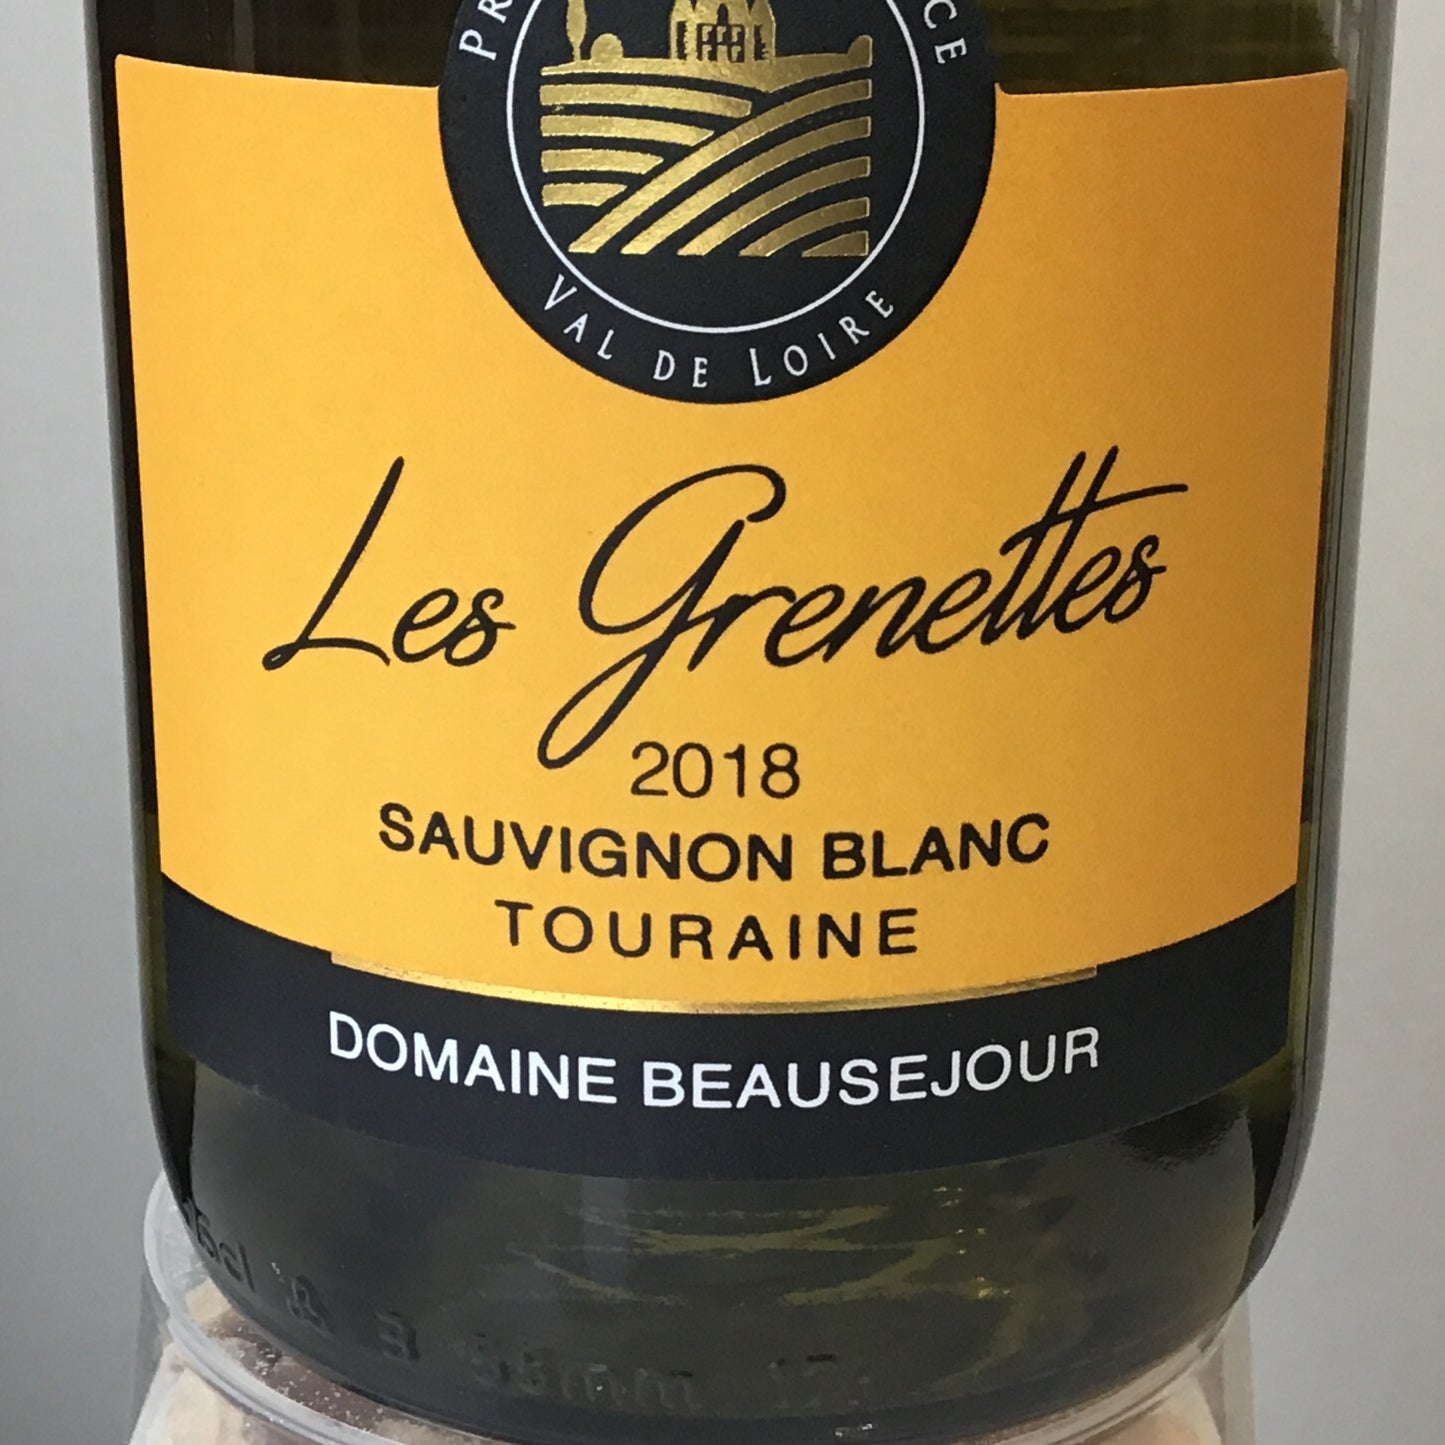 Domaine Beausejour 'Les Grenettes' - Sauvignon Blanc